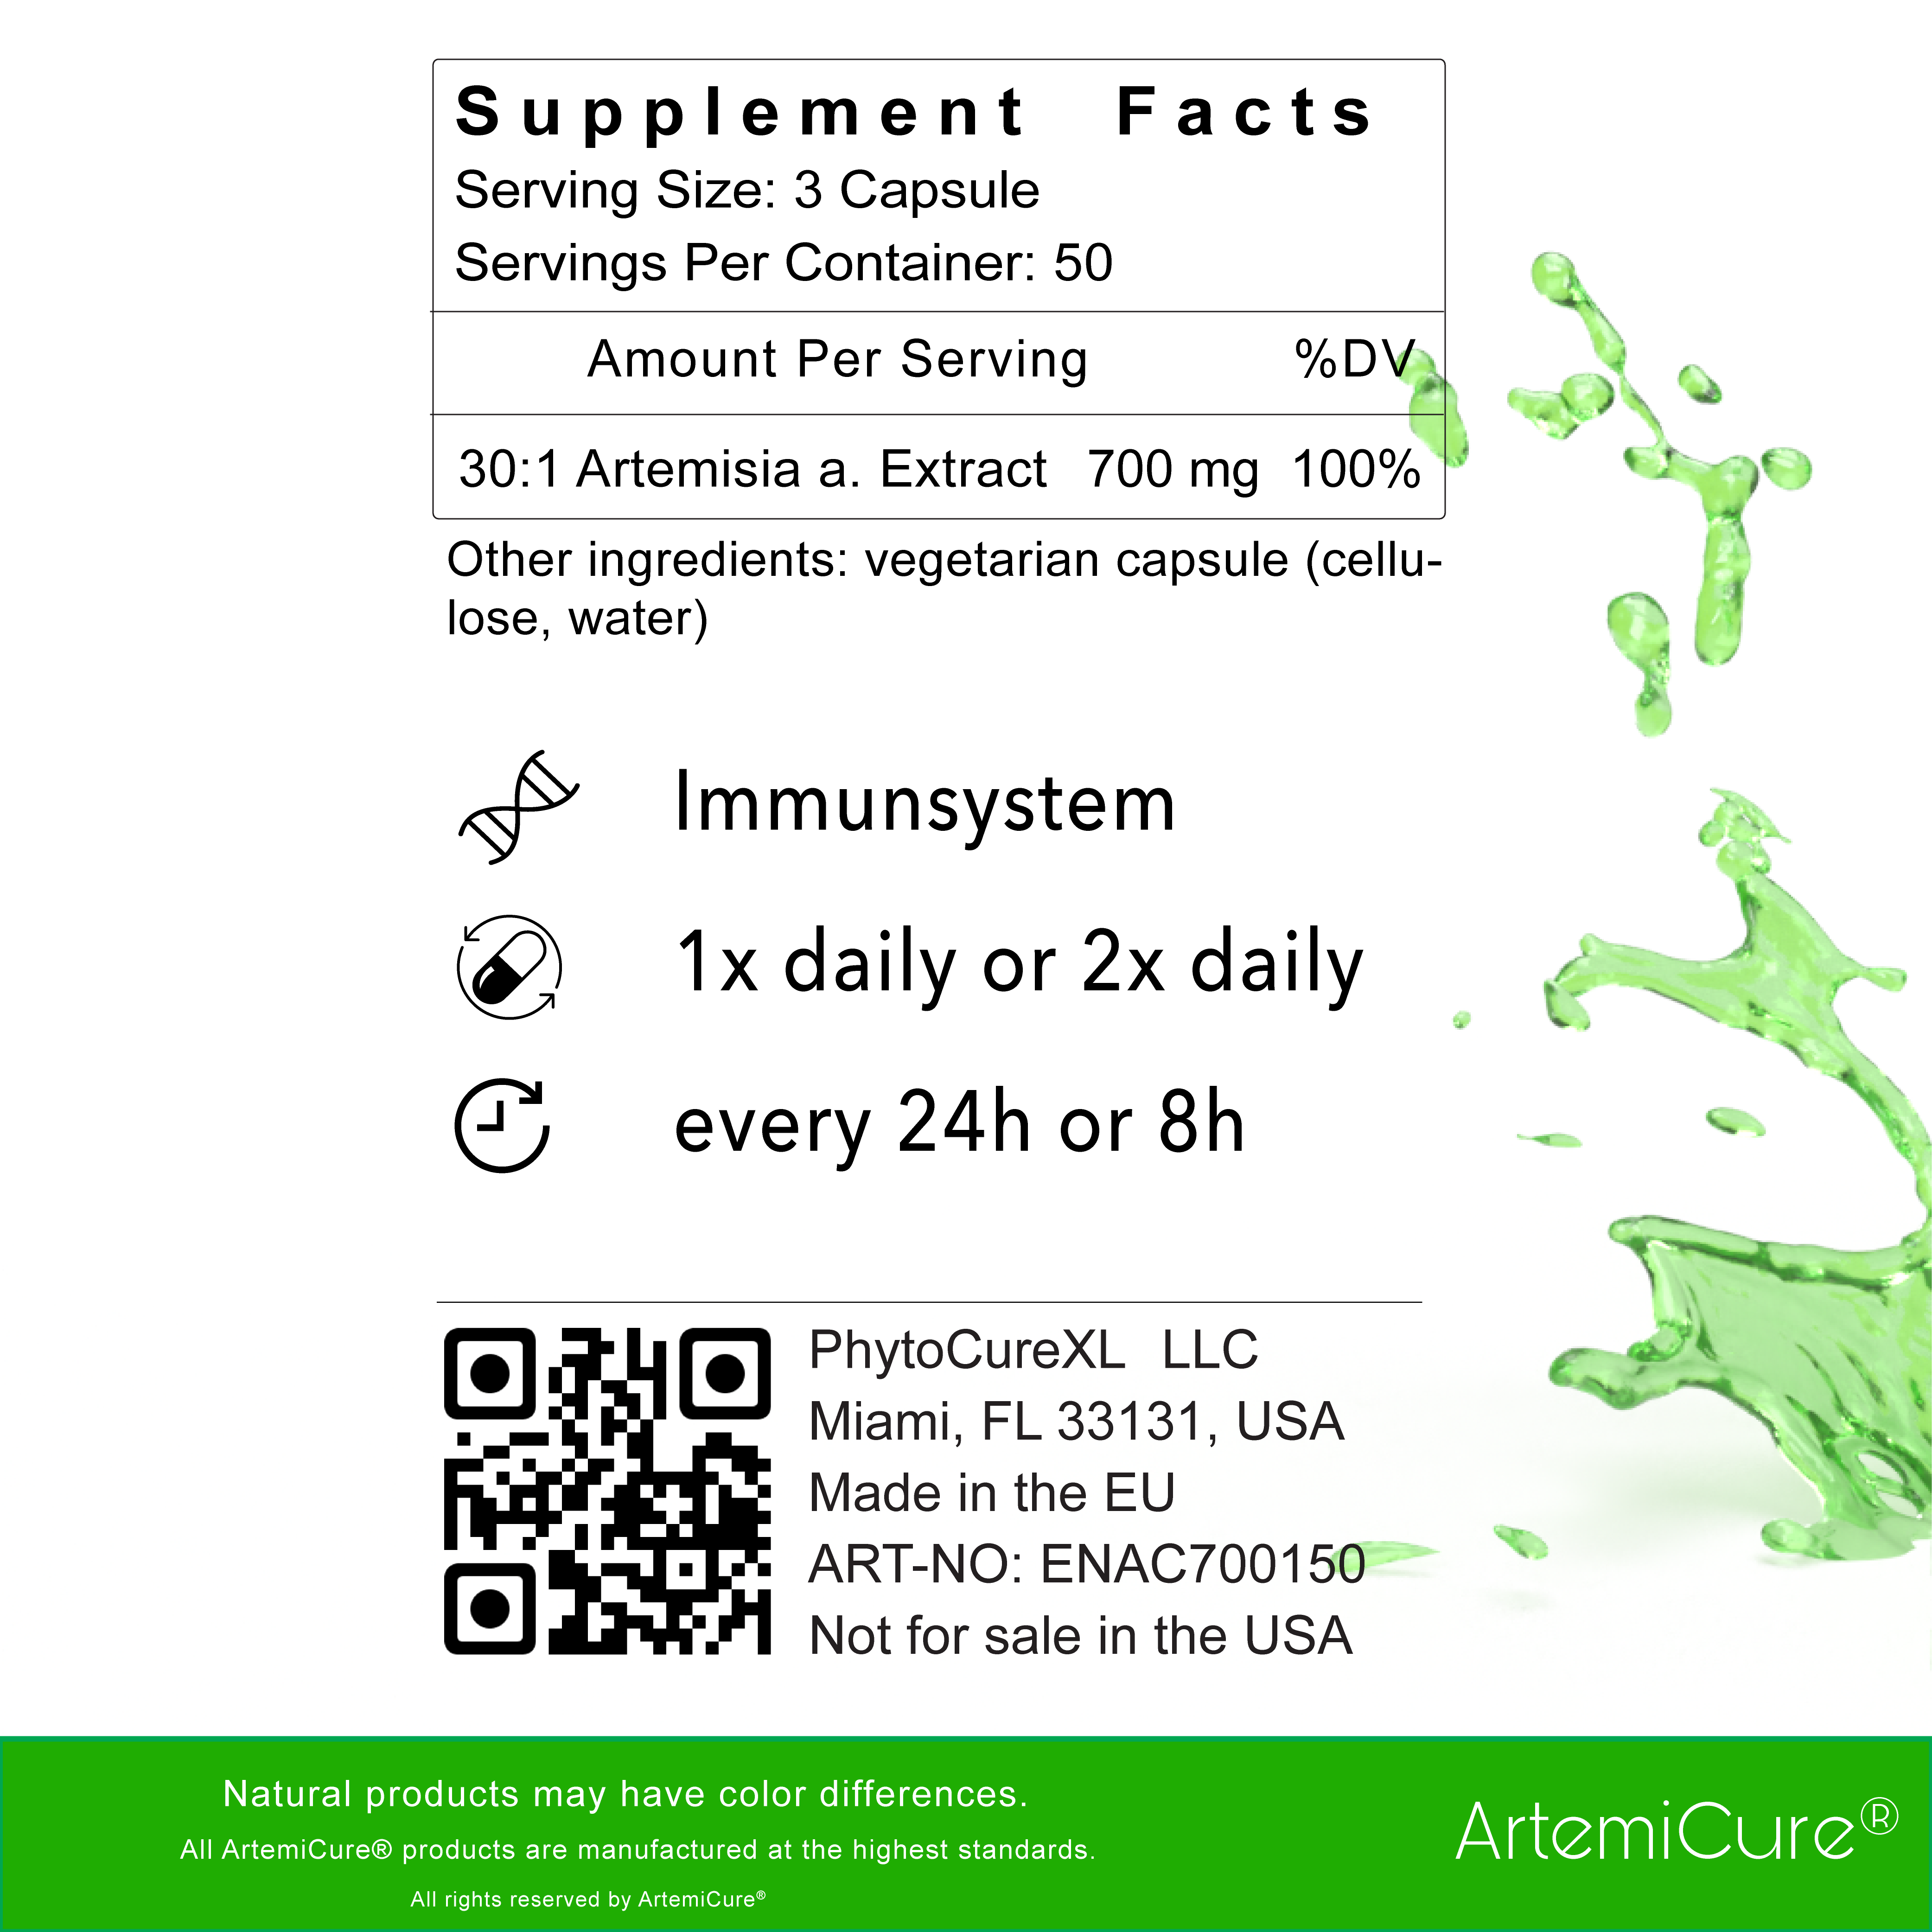 Artemisia annua - 30:1 plant extract - 150 capsules